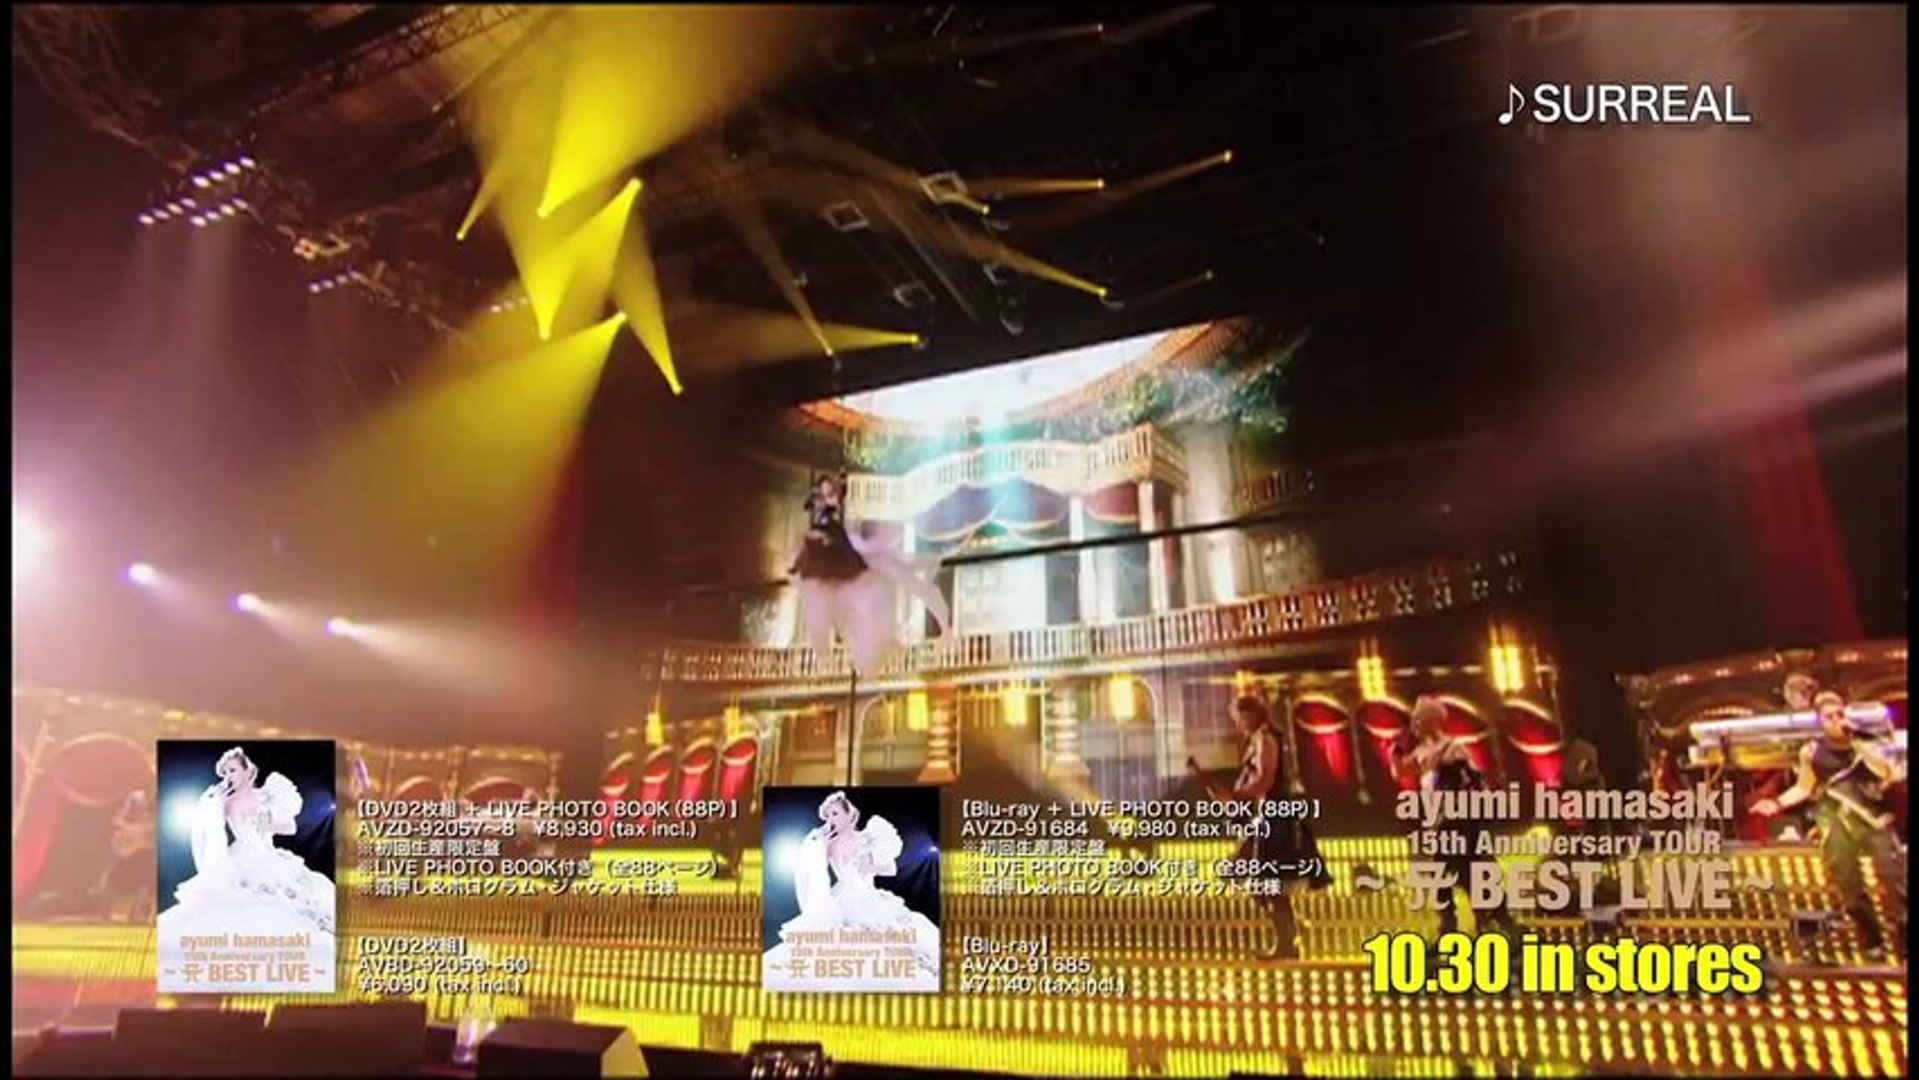 浜崎あゆみ - 「ayumi hamasaki 15th Anniversary TOUR 〜A BEST LIVE〜」ダイジェスト映像